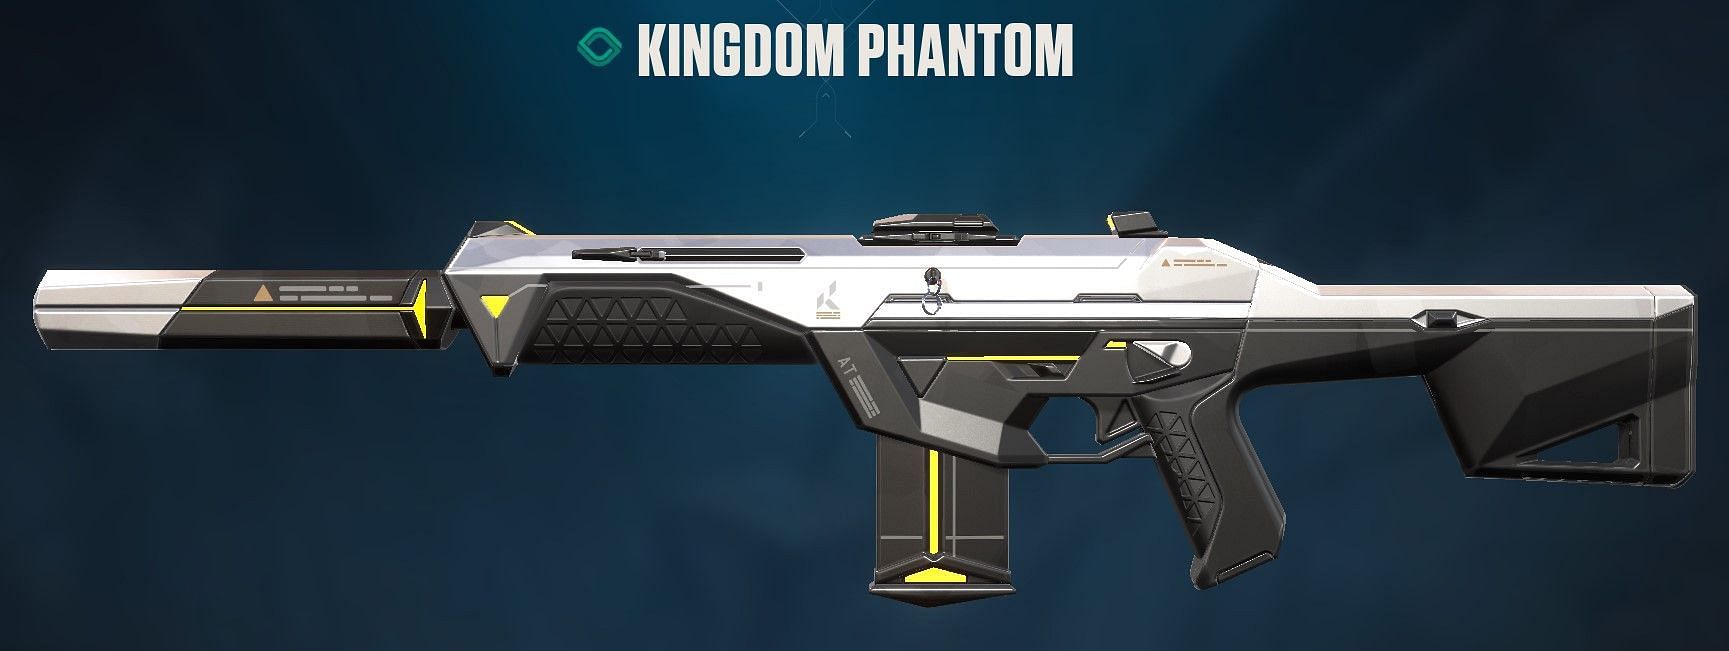 Kingdom Phantom (Image via Riot Games)